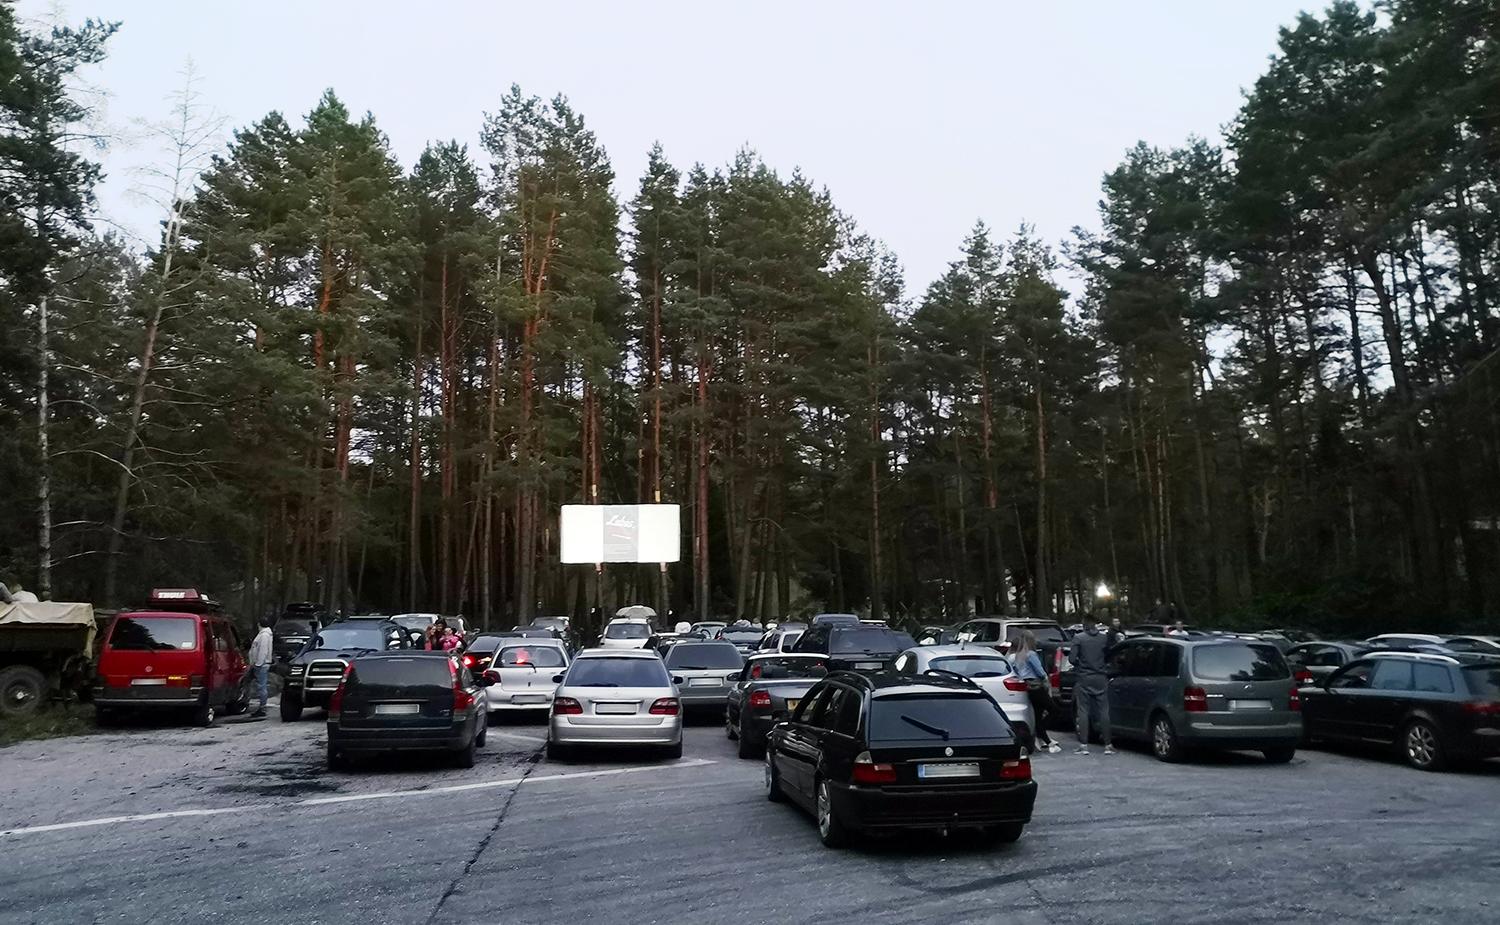 Kino seansą perkėlė į mišką / Kinas rodomas miške.